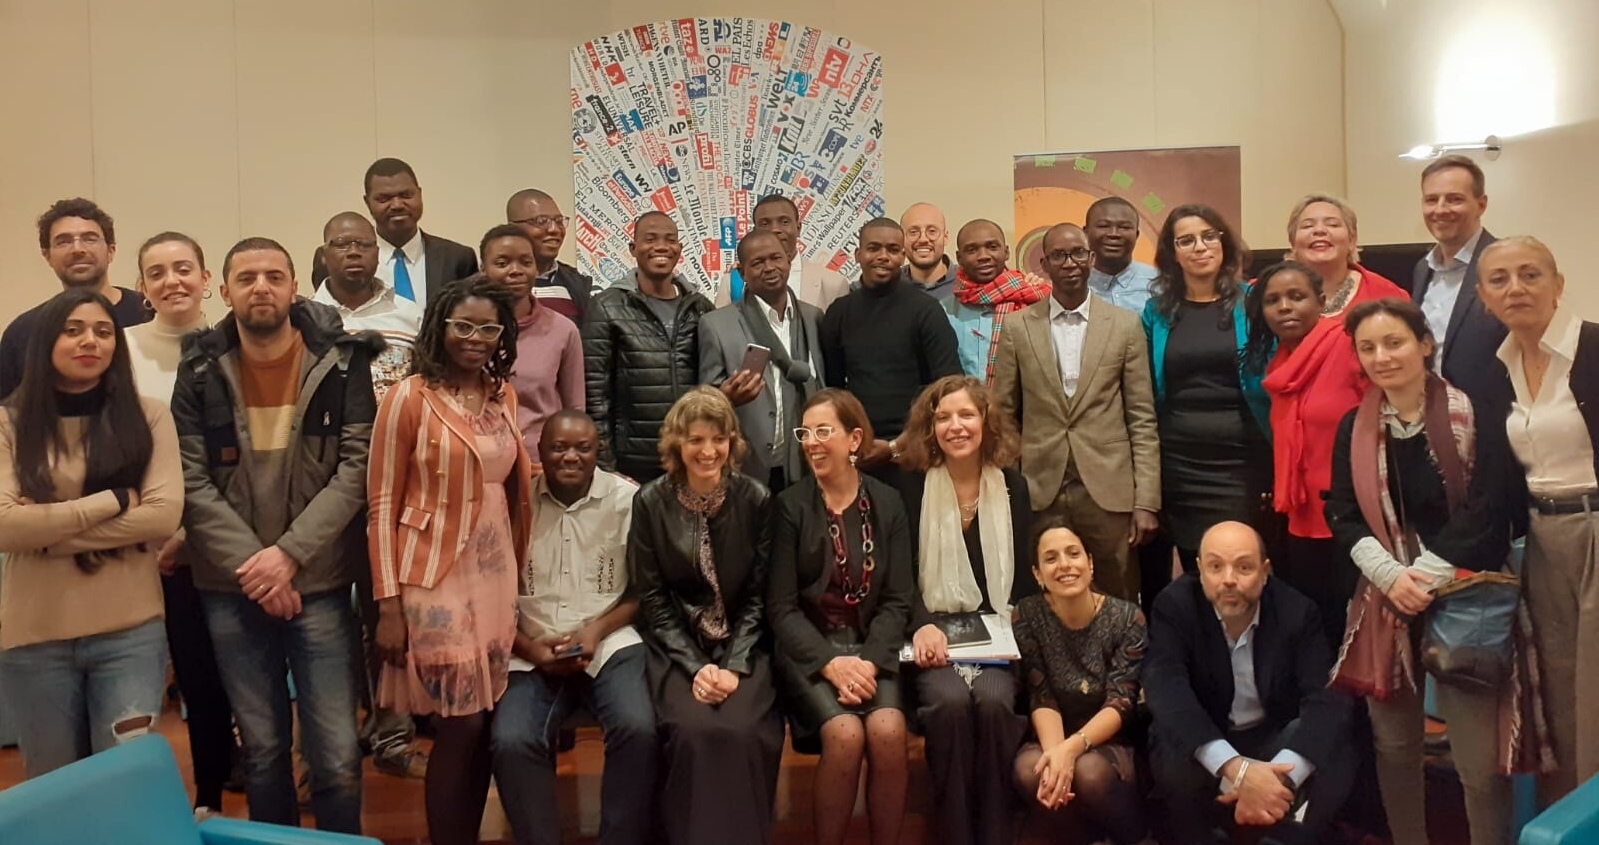 Una delegazione di giornalisti africani visita le redazioni italiane per parlare di informazione e migrazione